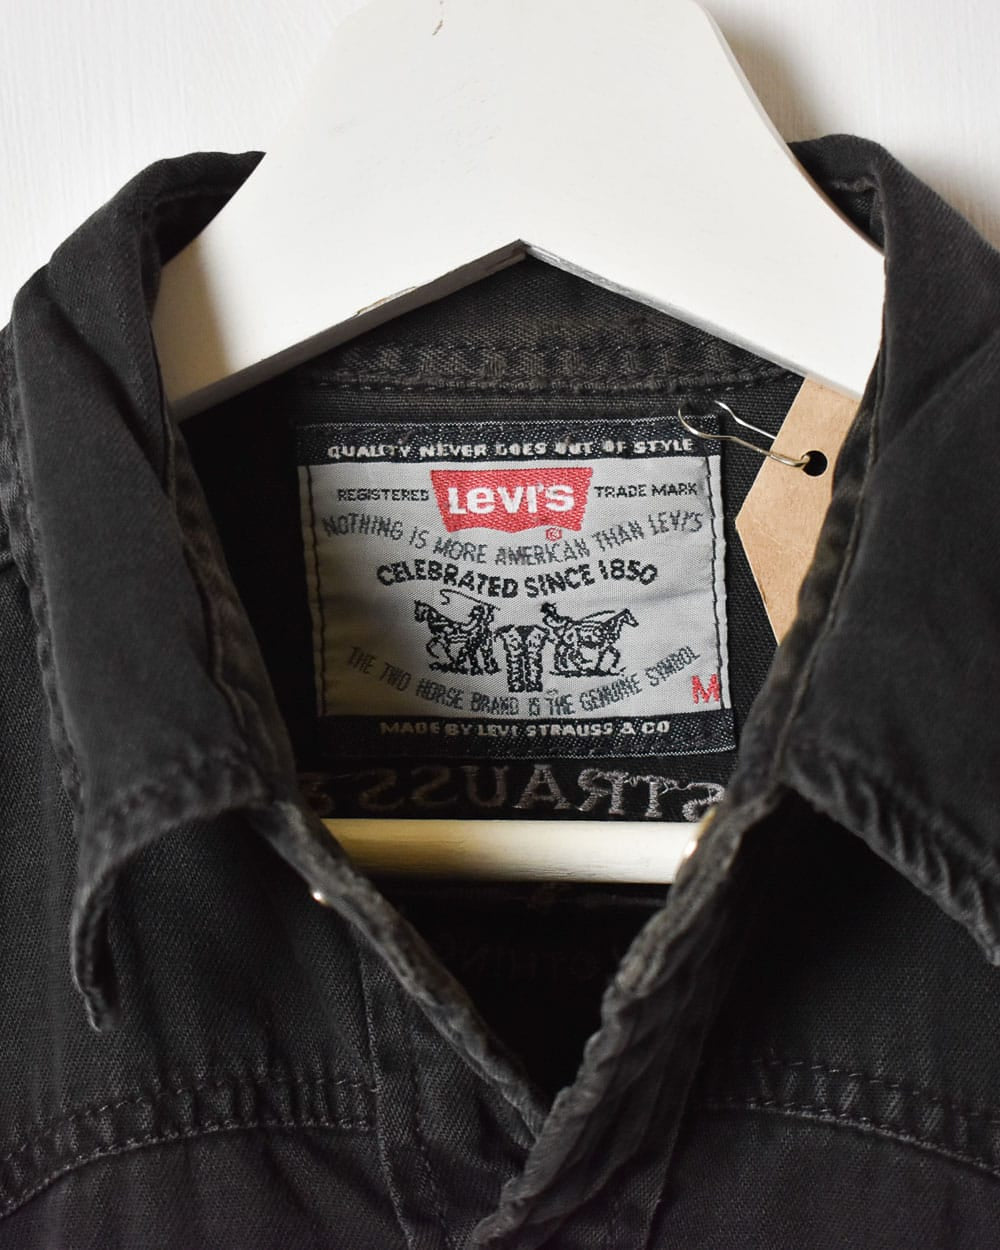 Black Levi's Denim Shirt - Medium